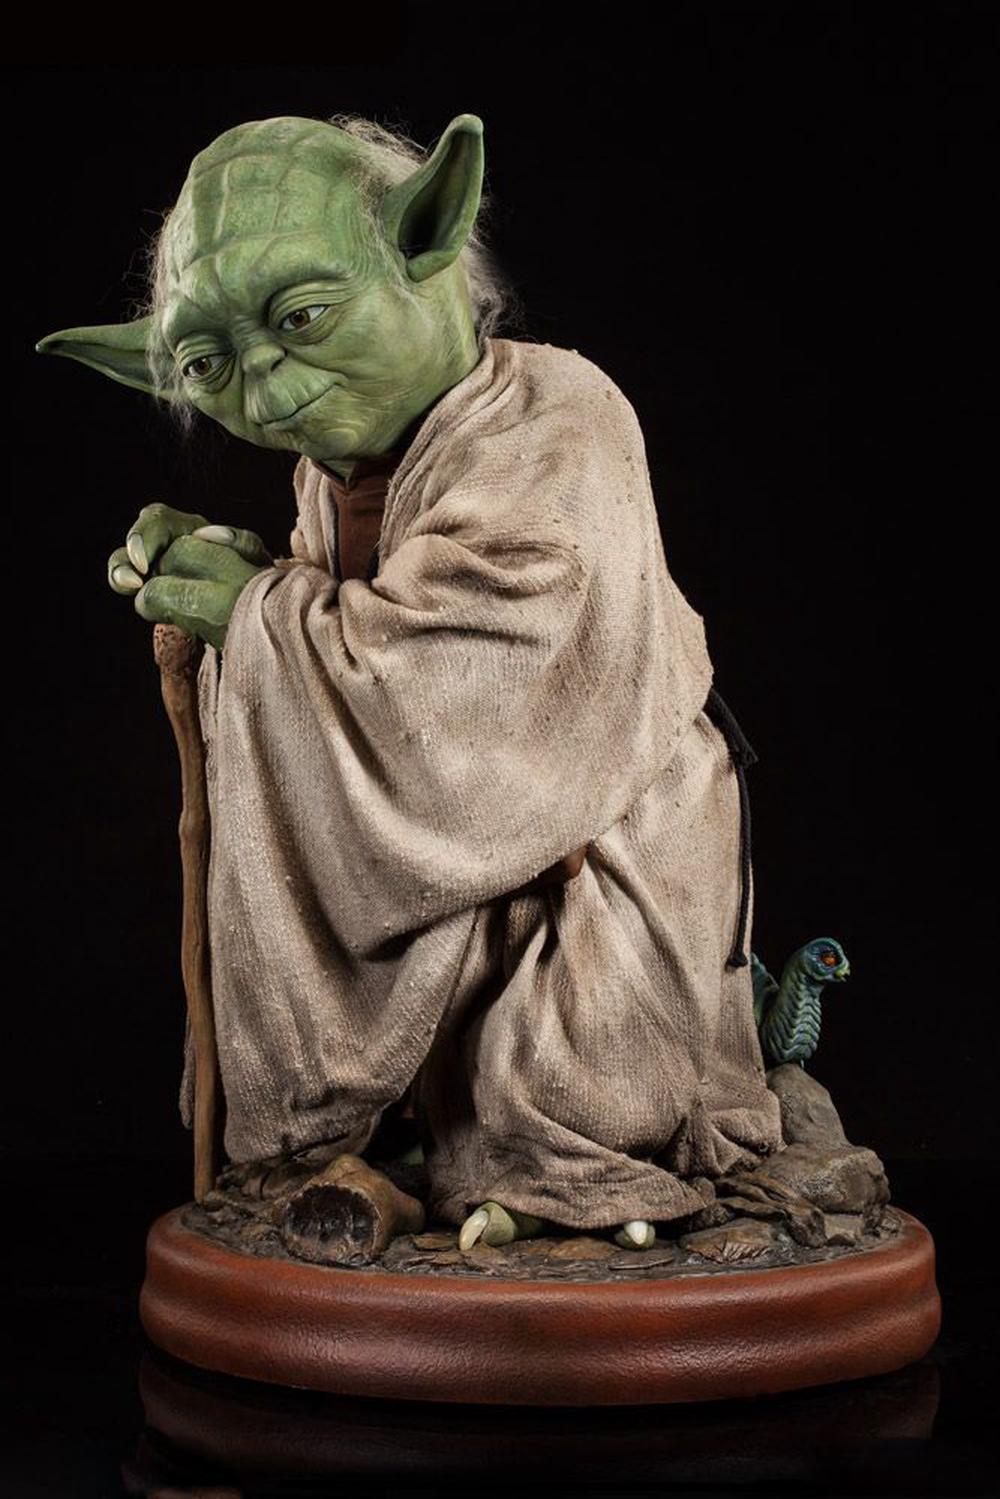 Star Wars - Yoda Life-Size Statue 